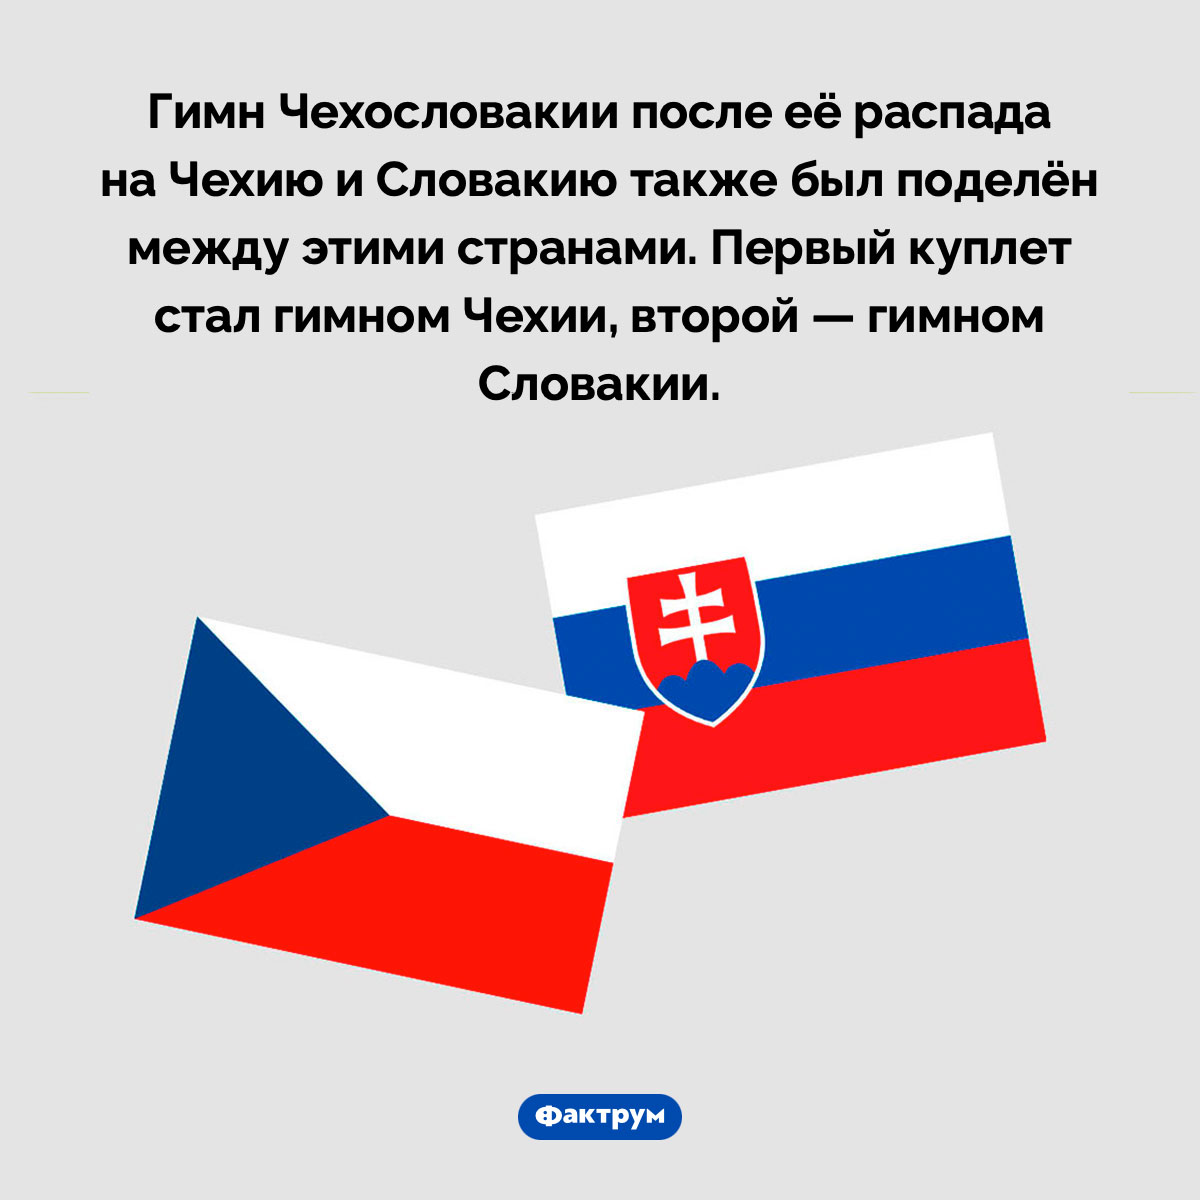 Чехи и словаки поделили не только Чехословакию, но и её гимн. Гимн Чехословакии после её распада на Чехию и Словакию также был поделён между этими странами. Первый куплет стал гимном Чехии, второй — гимном Словакии.